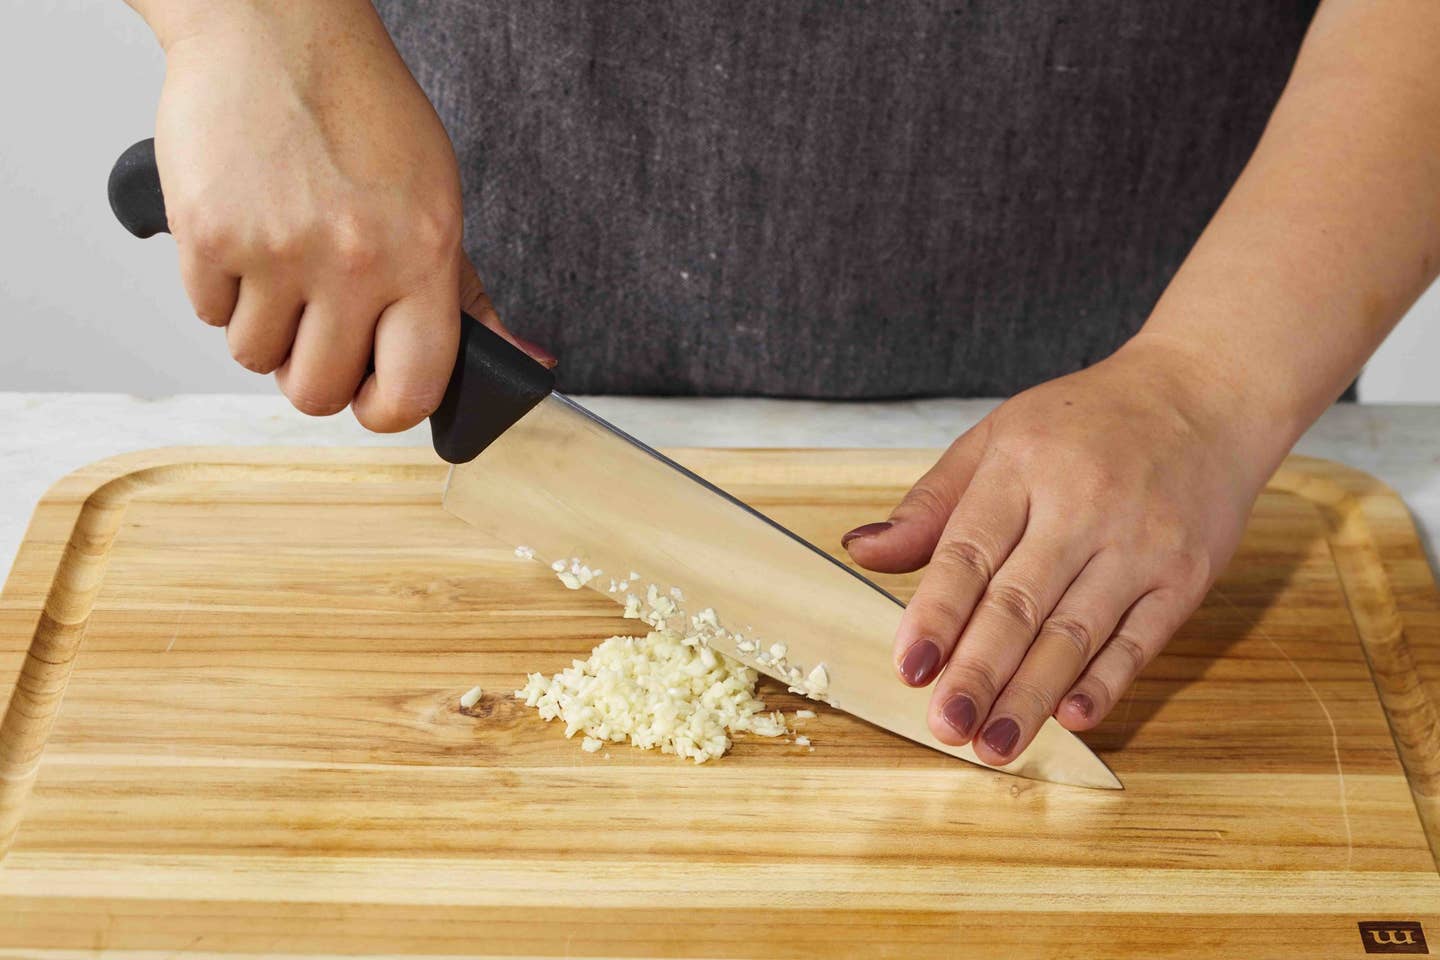 A chef minces garlic on a cutting board